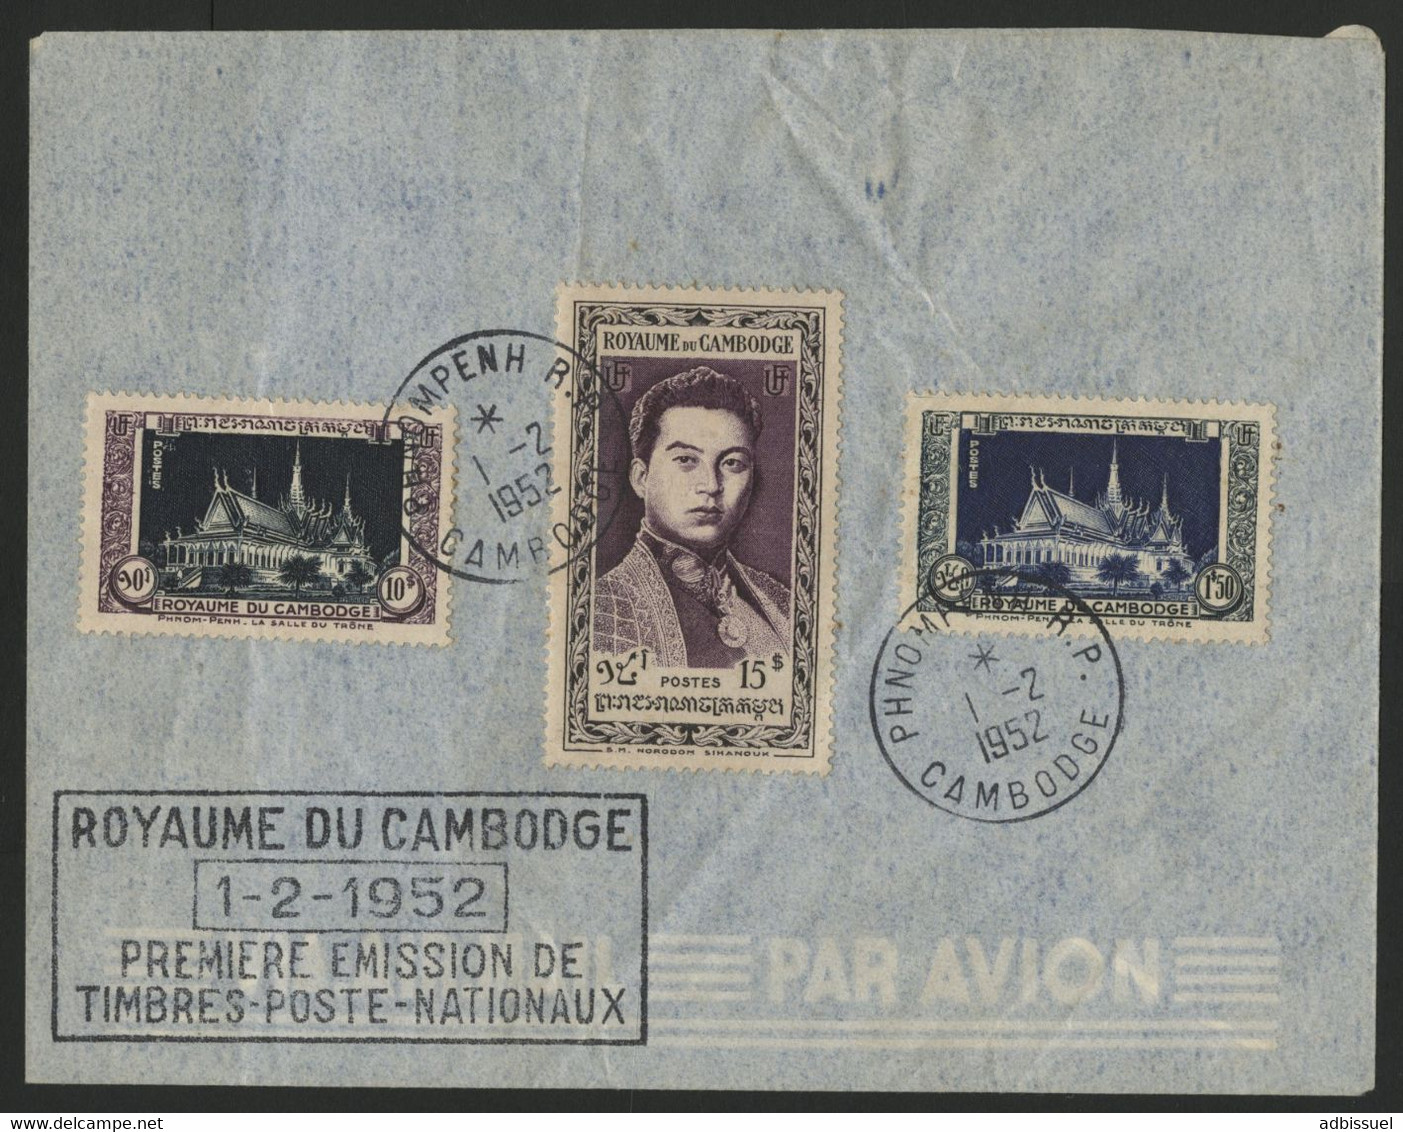 CAMBODGE CAMBODIA Enveloppe PREMIER JOUR FDC Avec N° 10 + 16 + 17 De 1952 (première émission) - Kambodscha